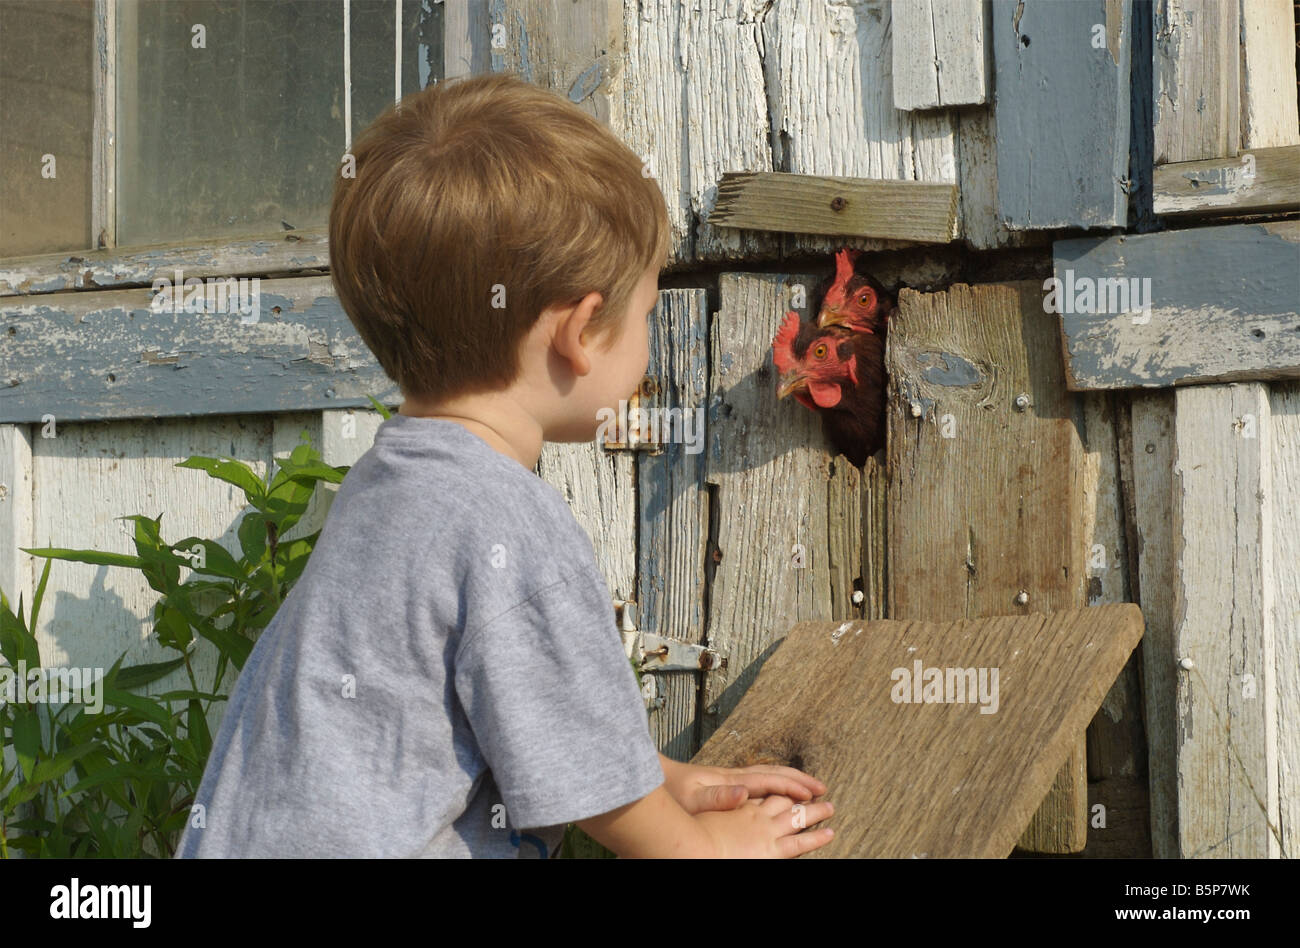 Zwei Jahre alte Junge schaut aus nächster Nähe zwei Rhode Island Red Hühner gerne kommen aus dem Hühnerstall Stockfoto